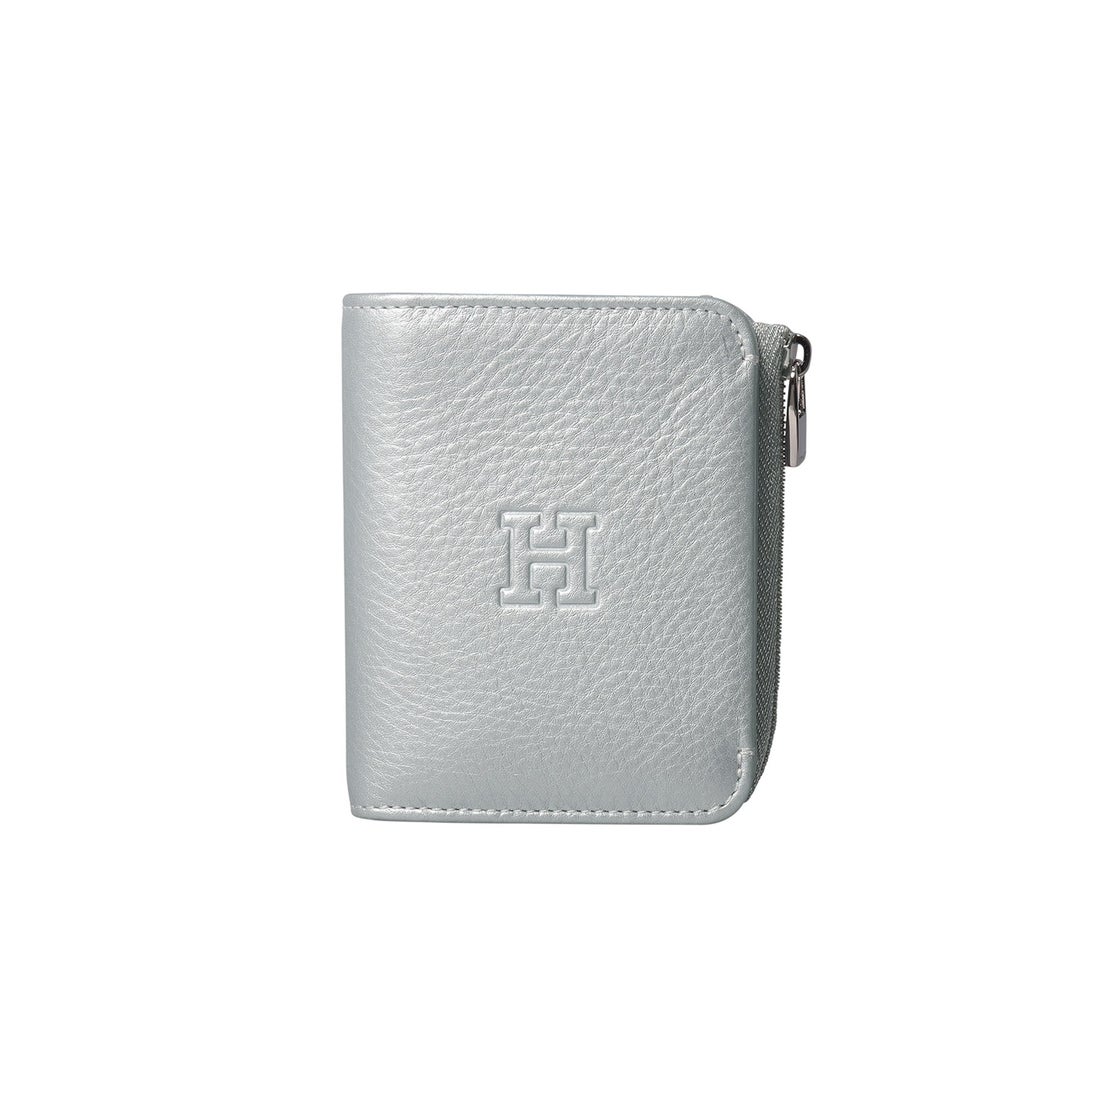 ヒロフ HIROFU 【プラティカ】二つ折り財布 レザー コンパクト